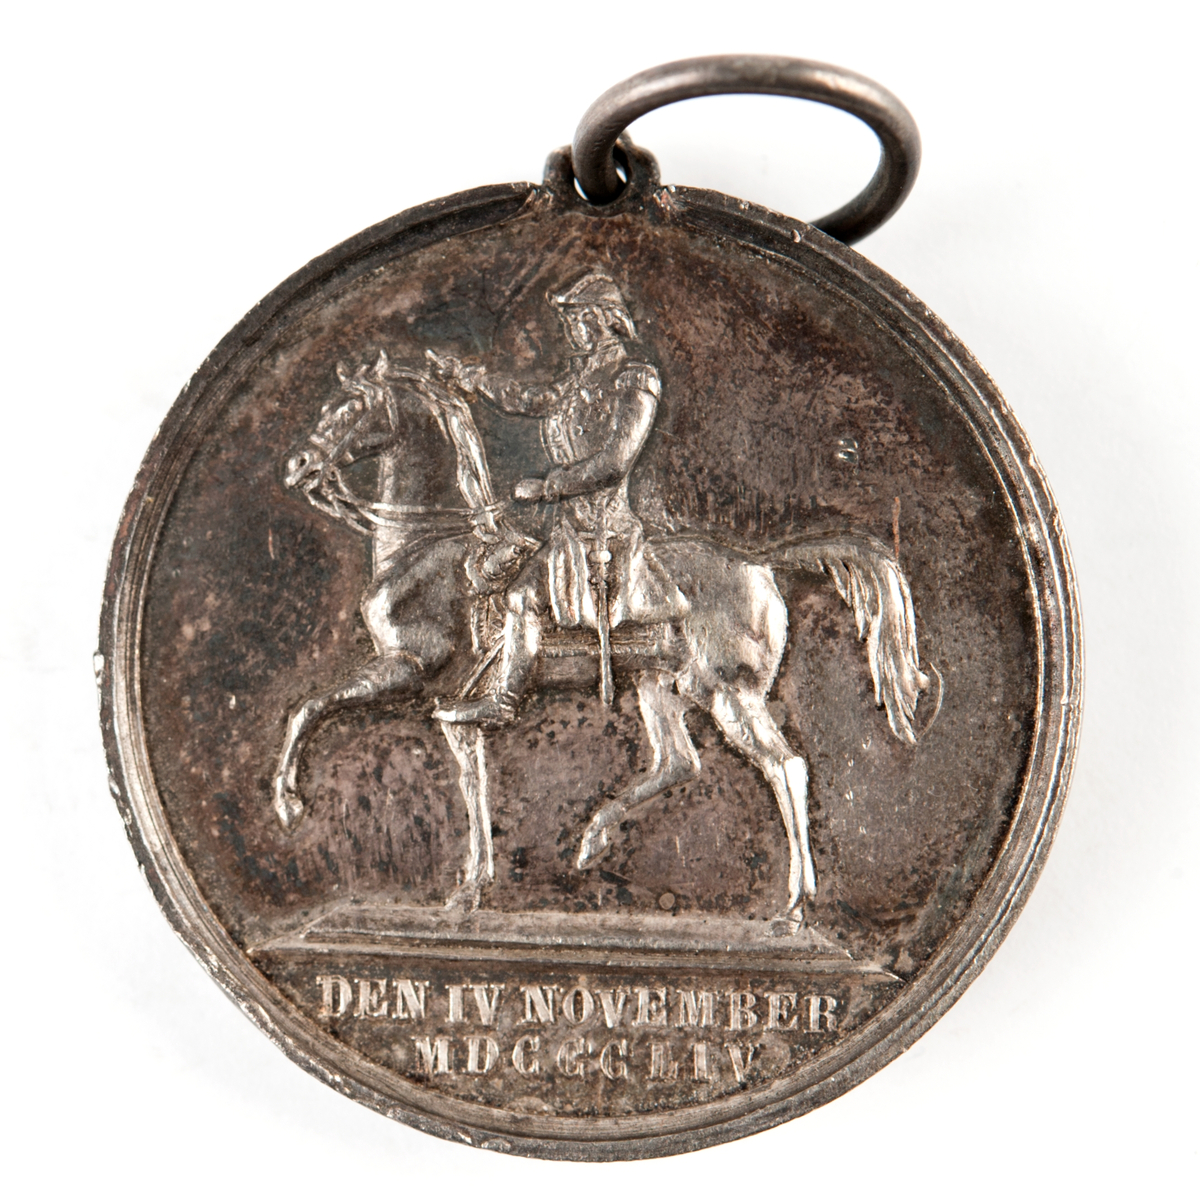 Åtsida: Bröstbild av Karl XIV Johan
Frånsida: Staty av Karl XIV Johan till häst